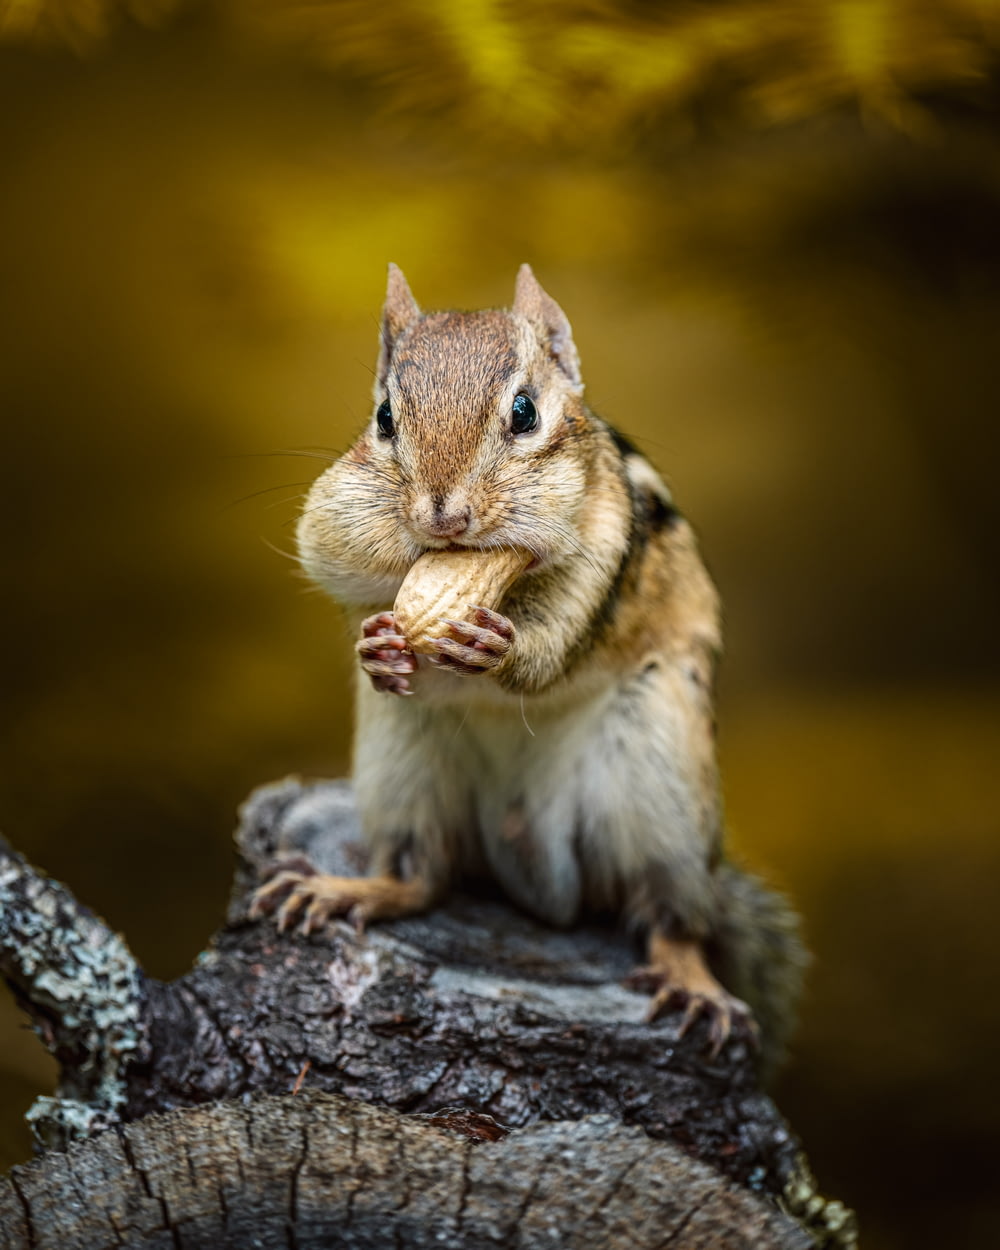 uno scoiattolo che mangia una noce